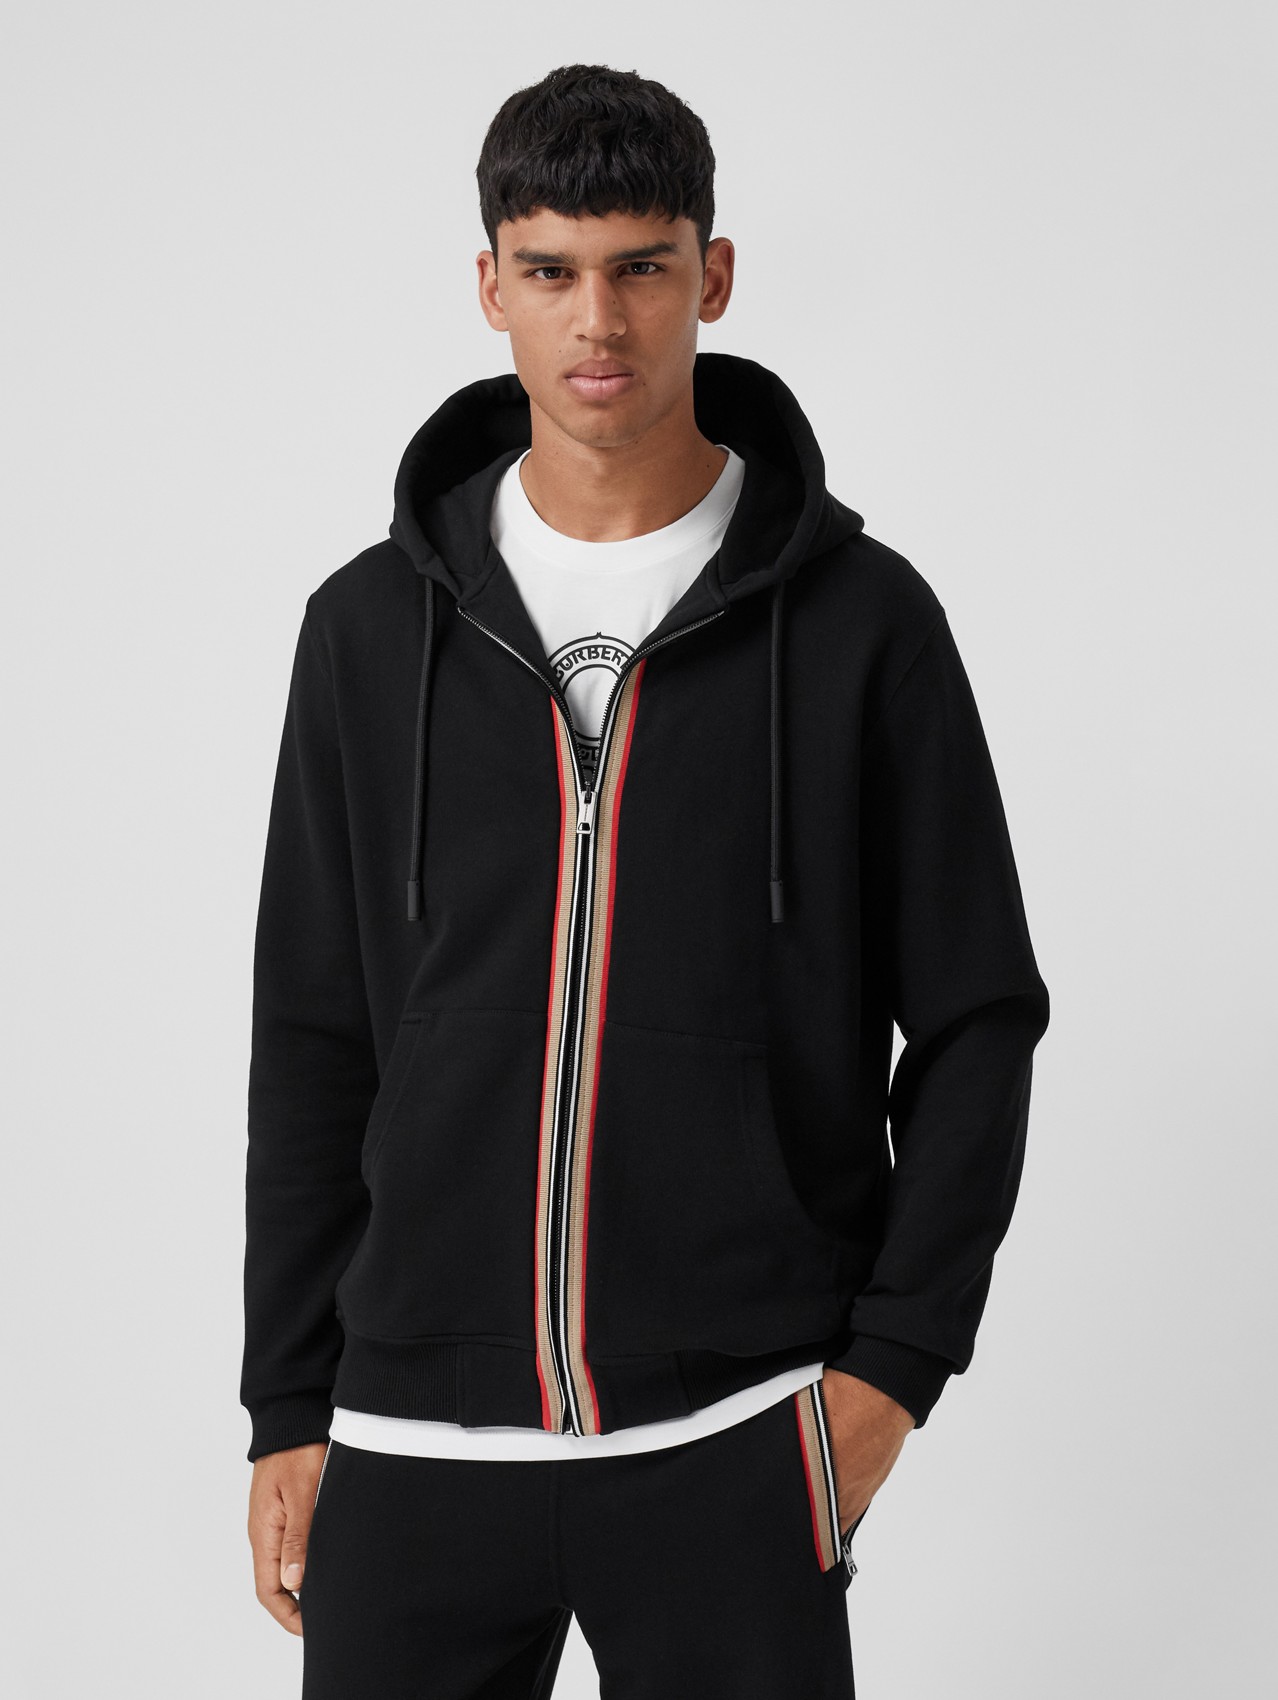 Hoodie à logo imprimé Coton Burberry pour homme Homme Vêtements Articles de sport et dentraînement Sweats à capuche 